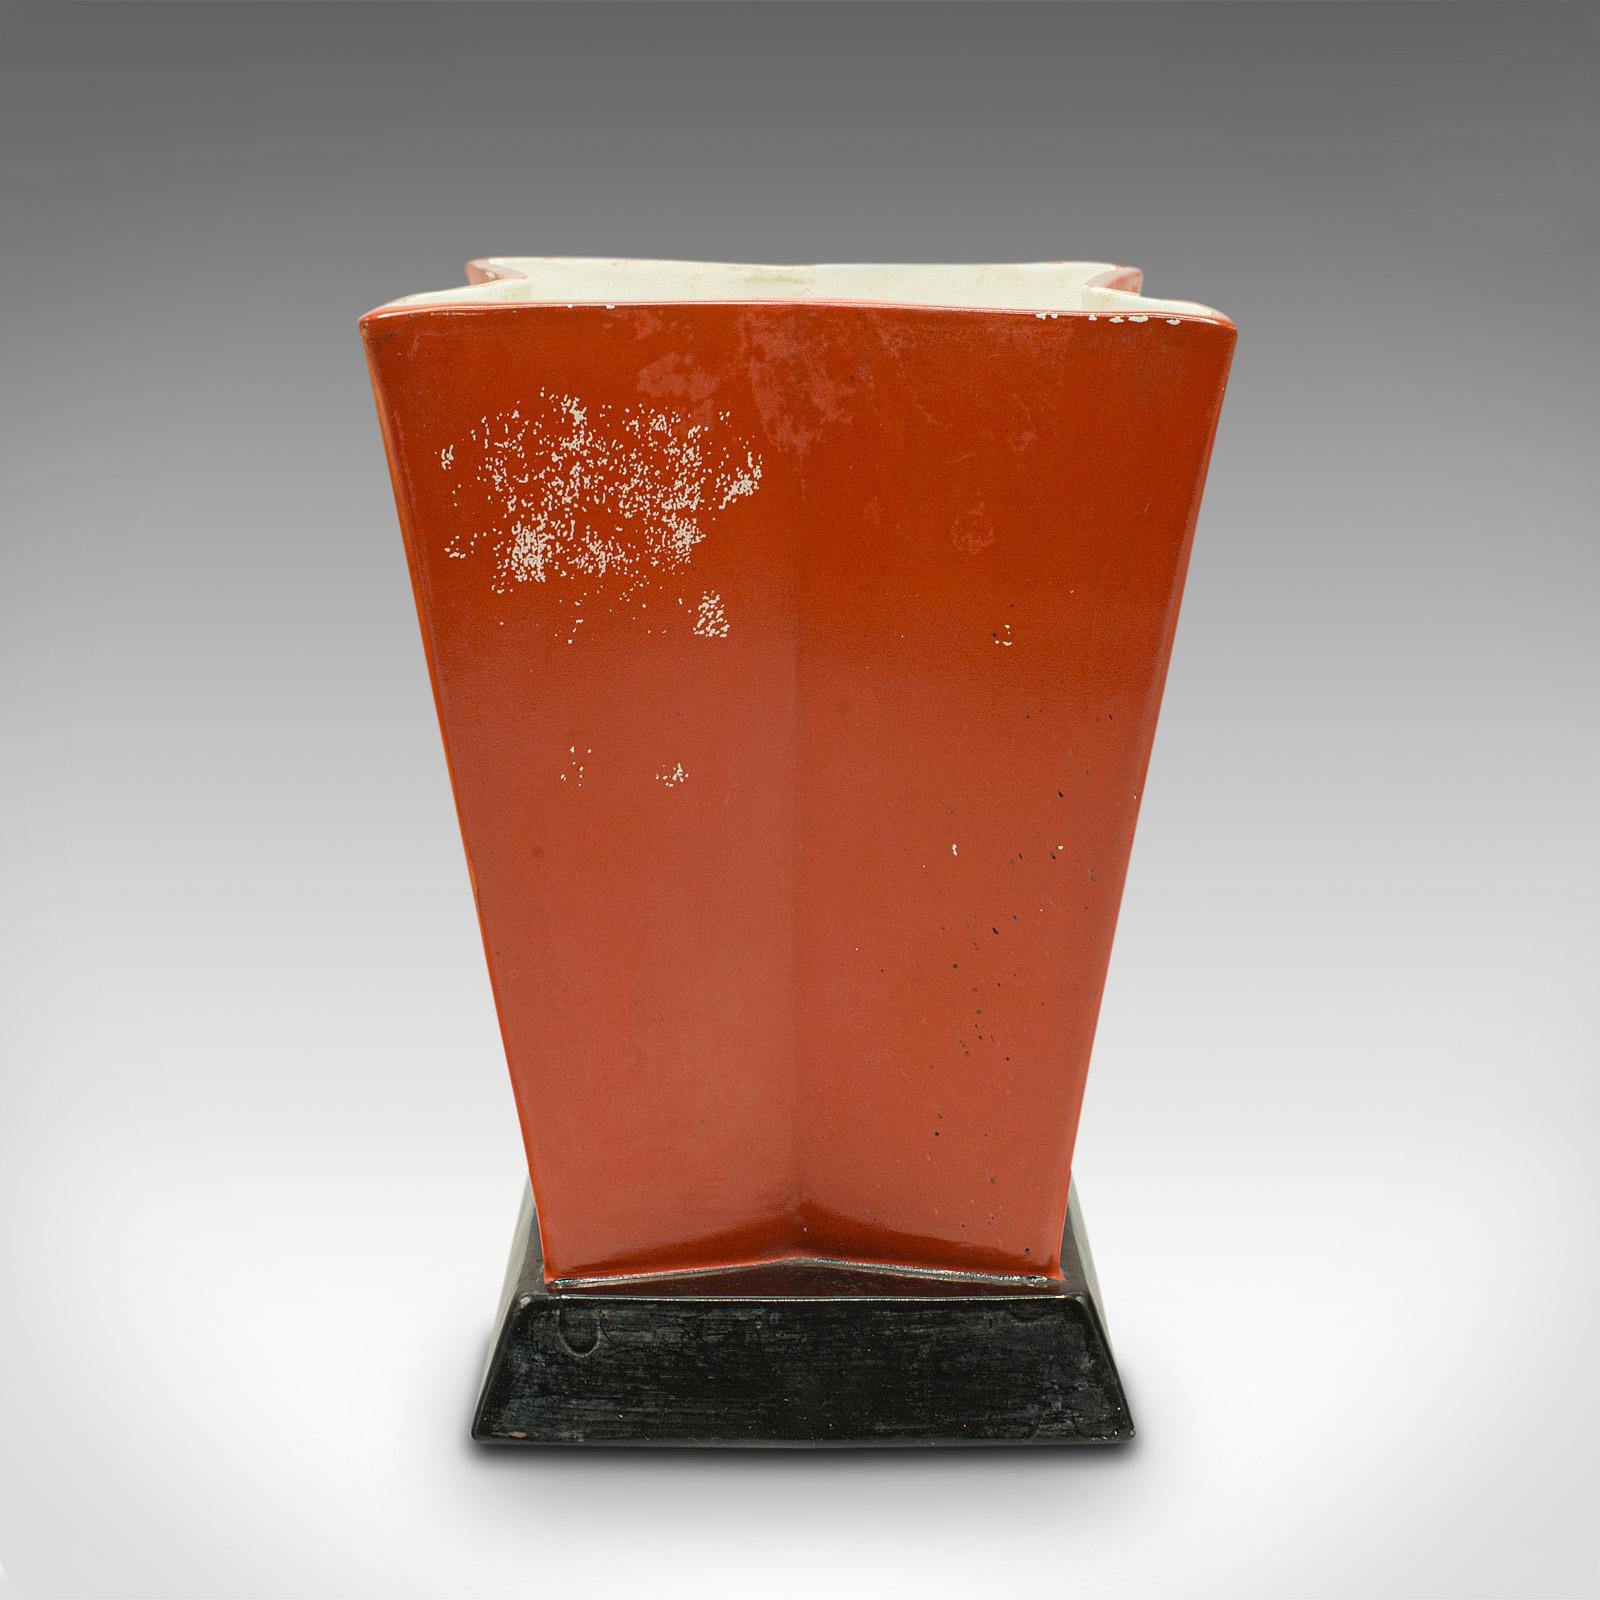 Dies ist eine dekorative Vintage-Vase. Ein belgisches, sternförmiges Exemplar aus Keramik im Art-déco-Stil, aus der Mitte des 20. Jahrhunderts, um 1940.

Form und Farbe dieser belgischen Vase sind auffallend
Zeigt eine wünschenswerte gealterte